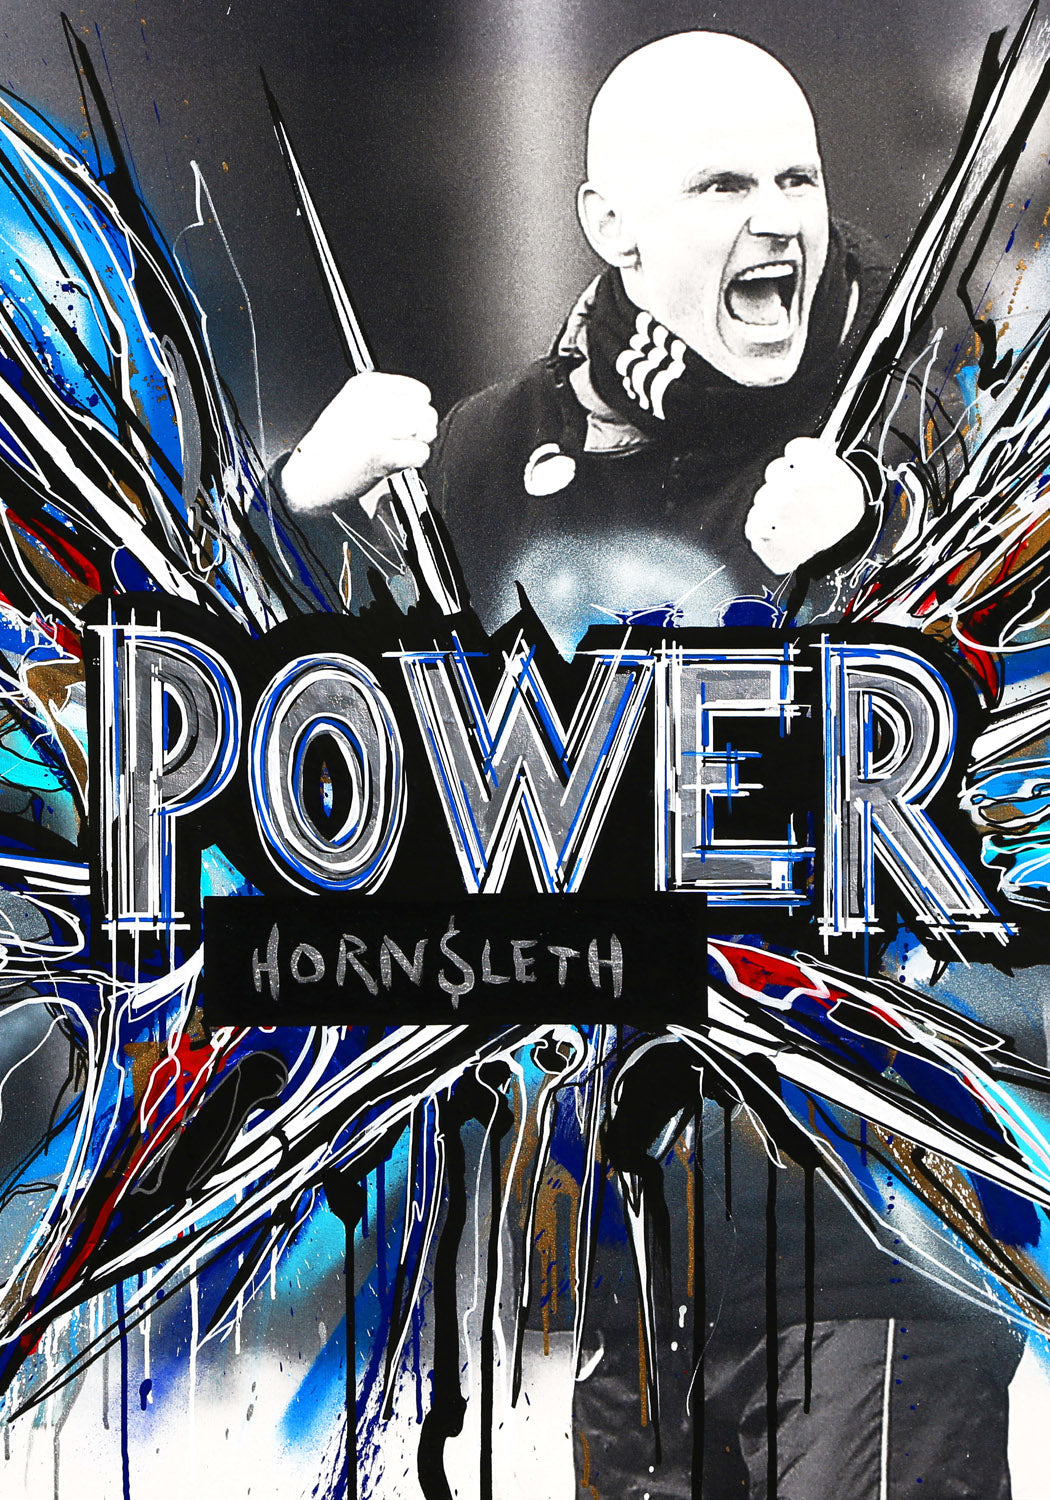 FCK - Power - Poster by Hornsleth